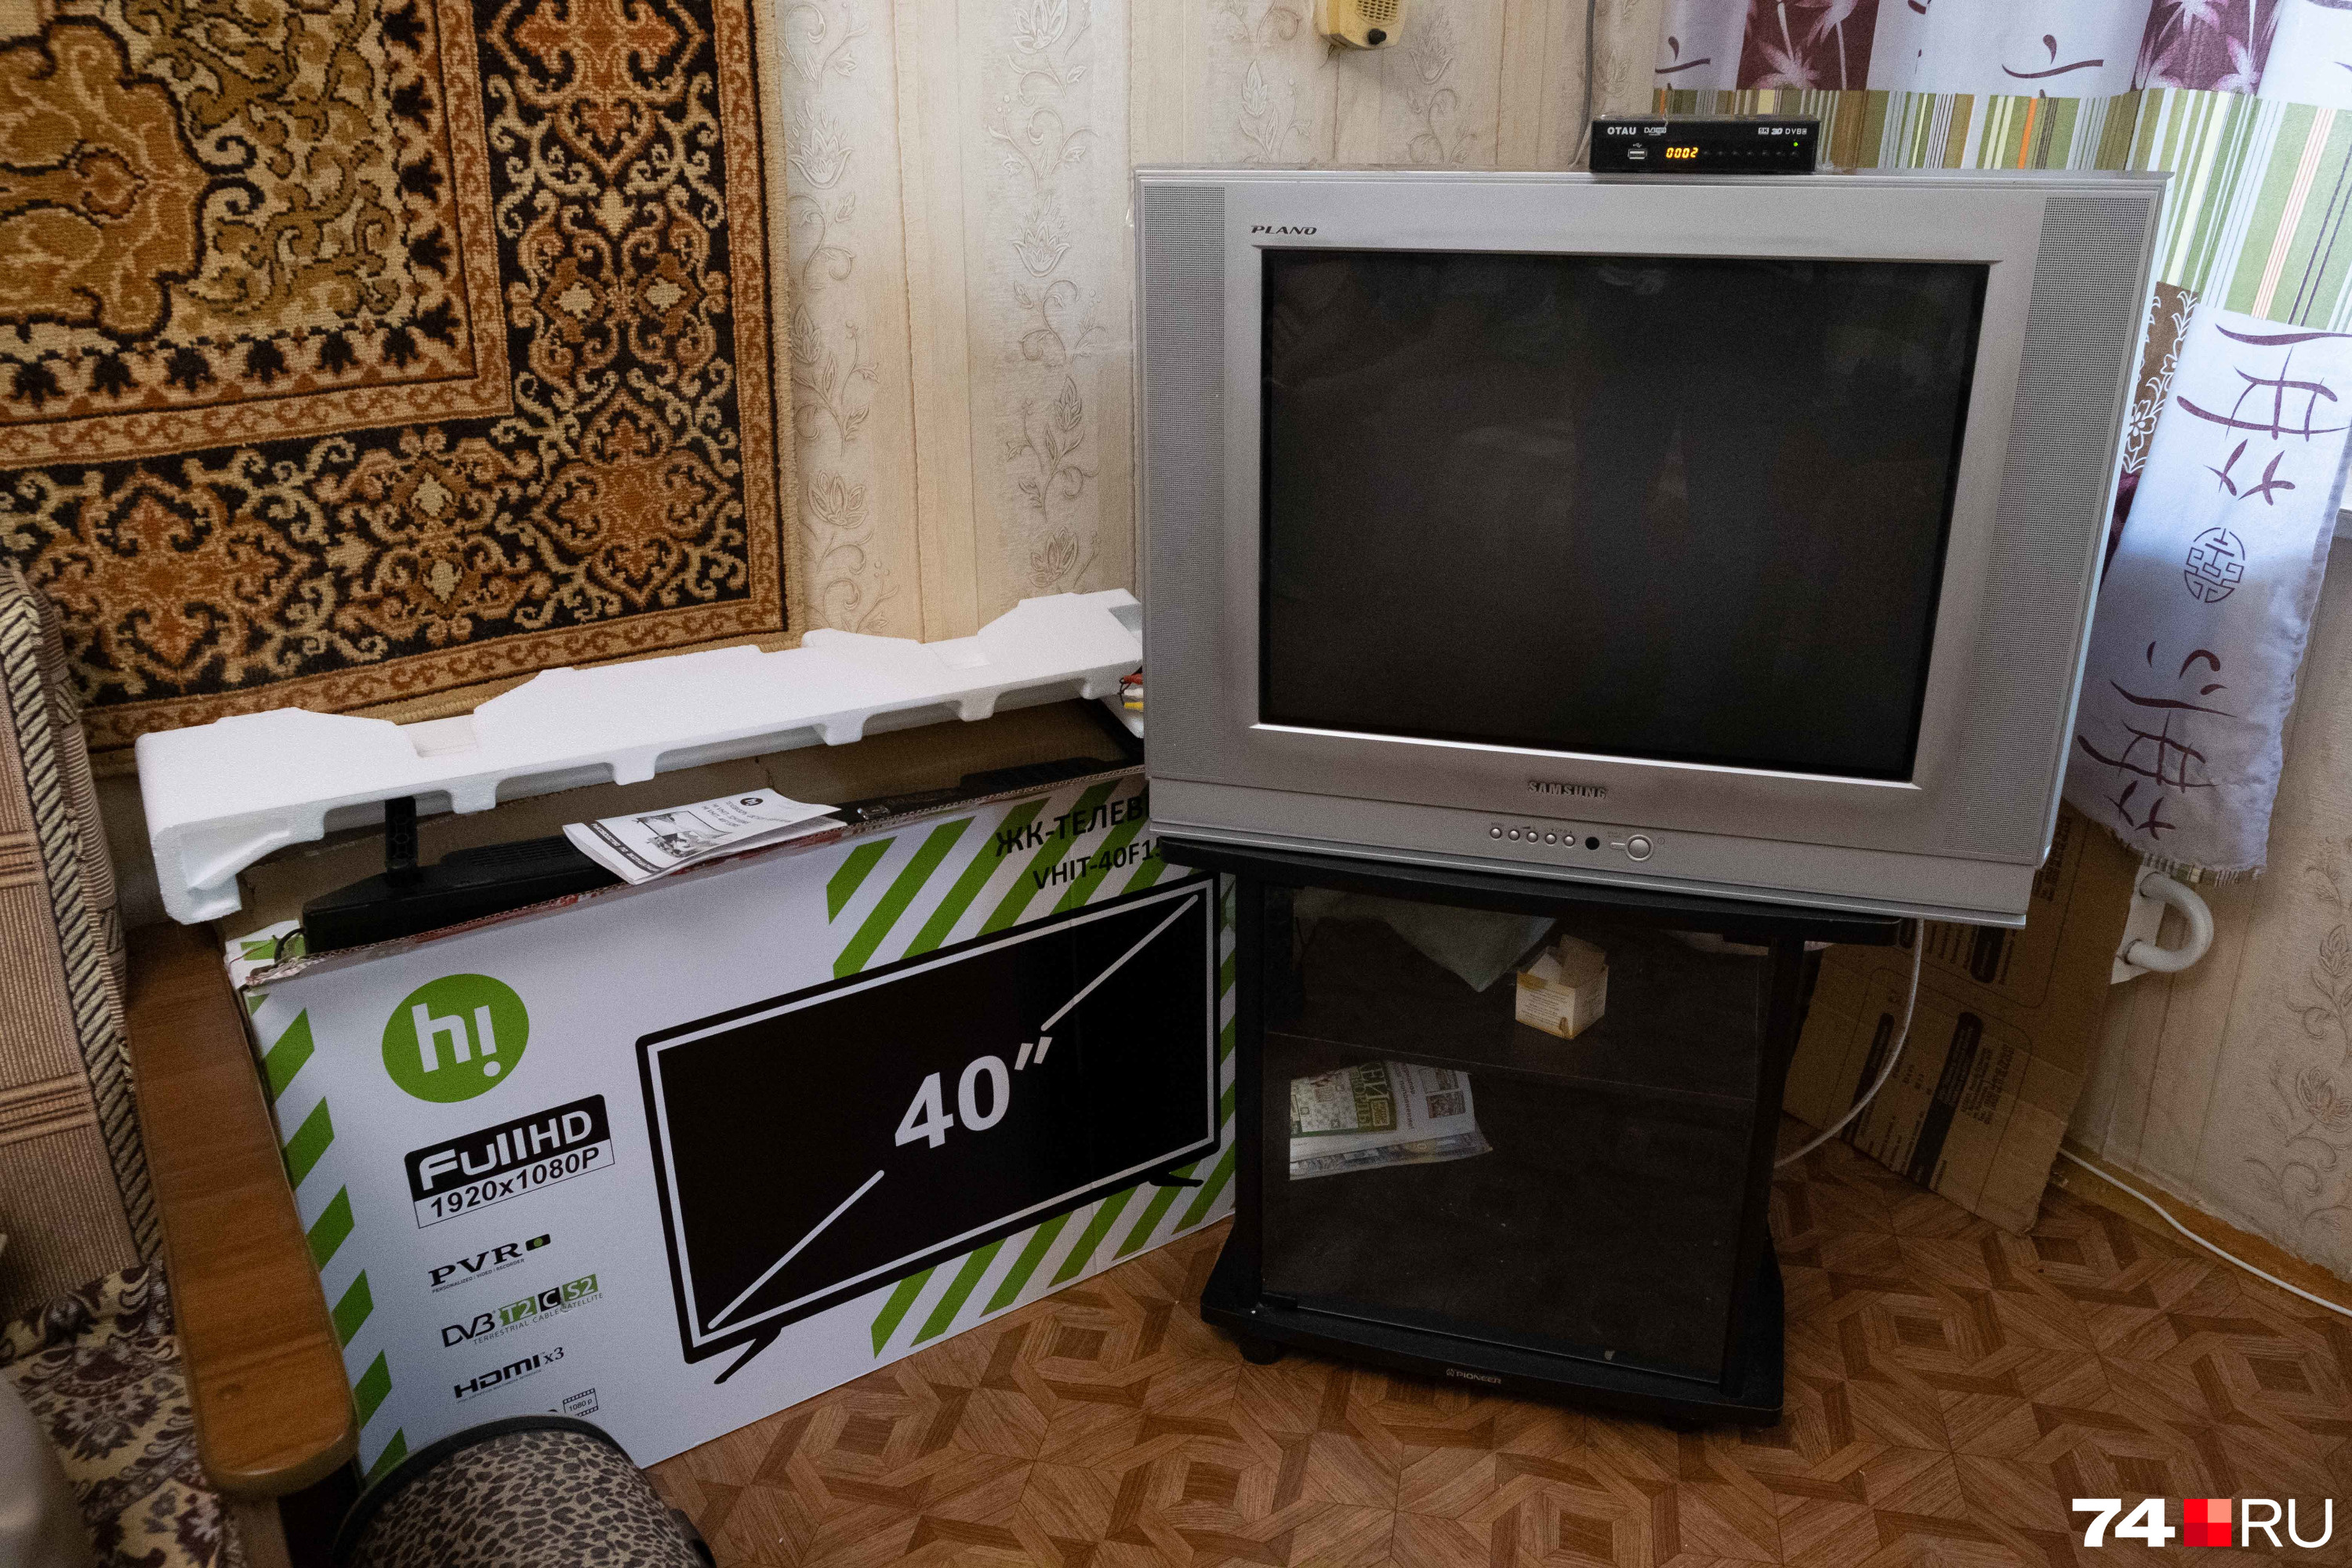 Старый телевизор вполне рабочий, но мастер уговорил хозяйку квартиры на покупку нового. Теперь он стоит рядом в коробке